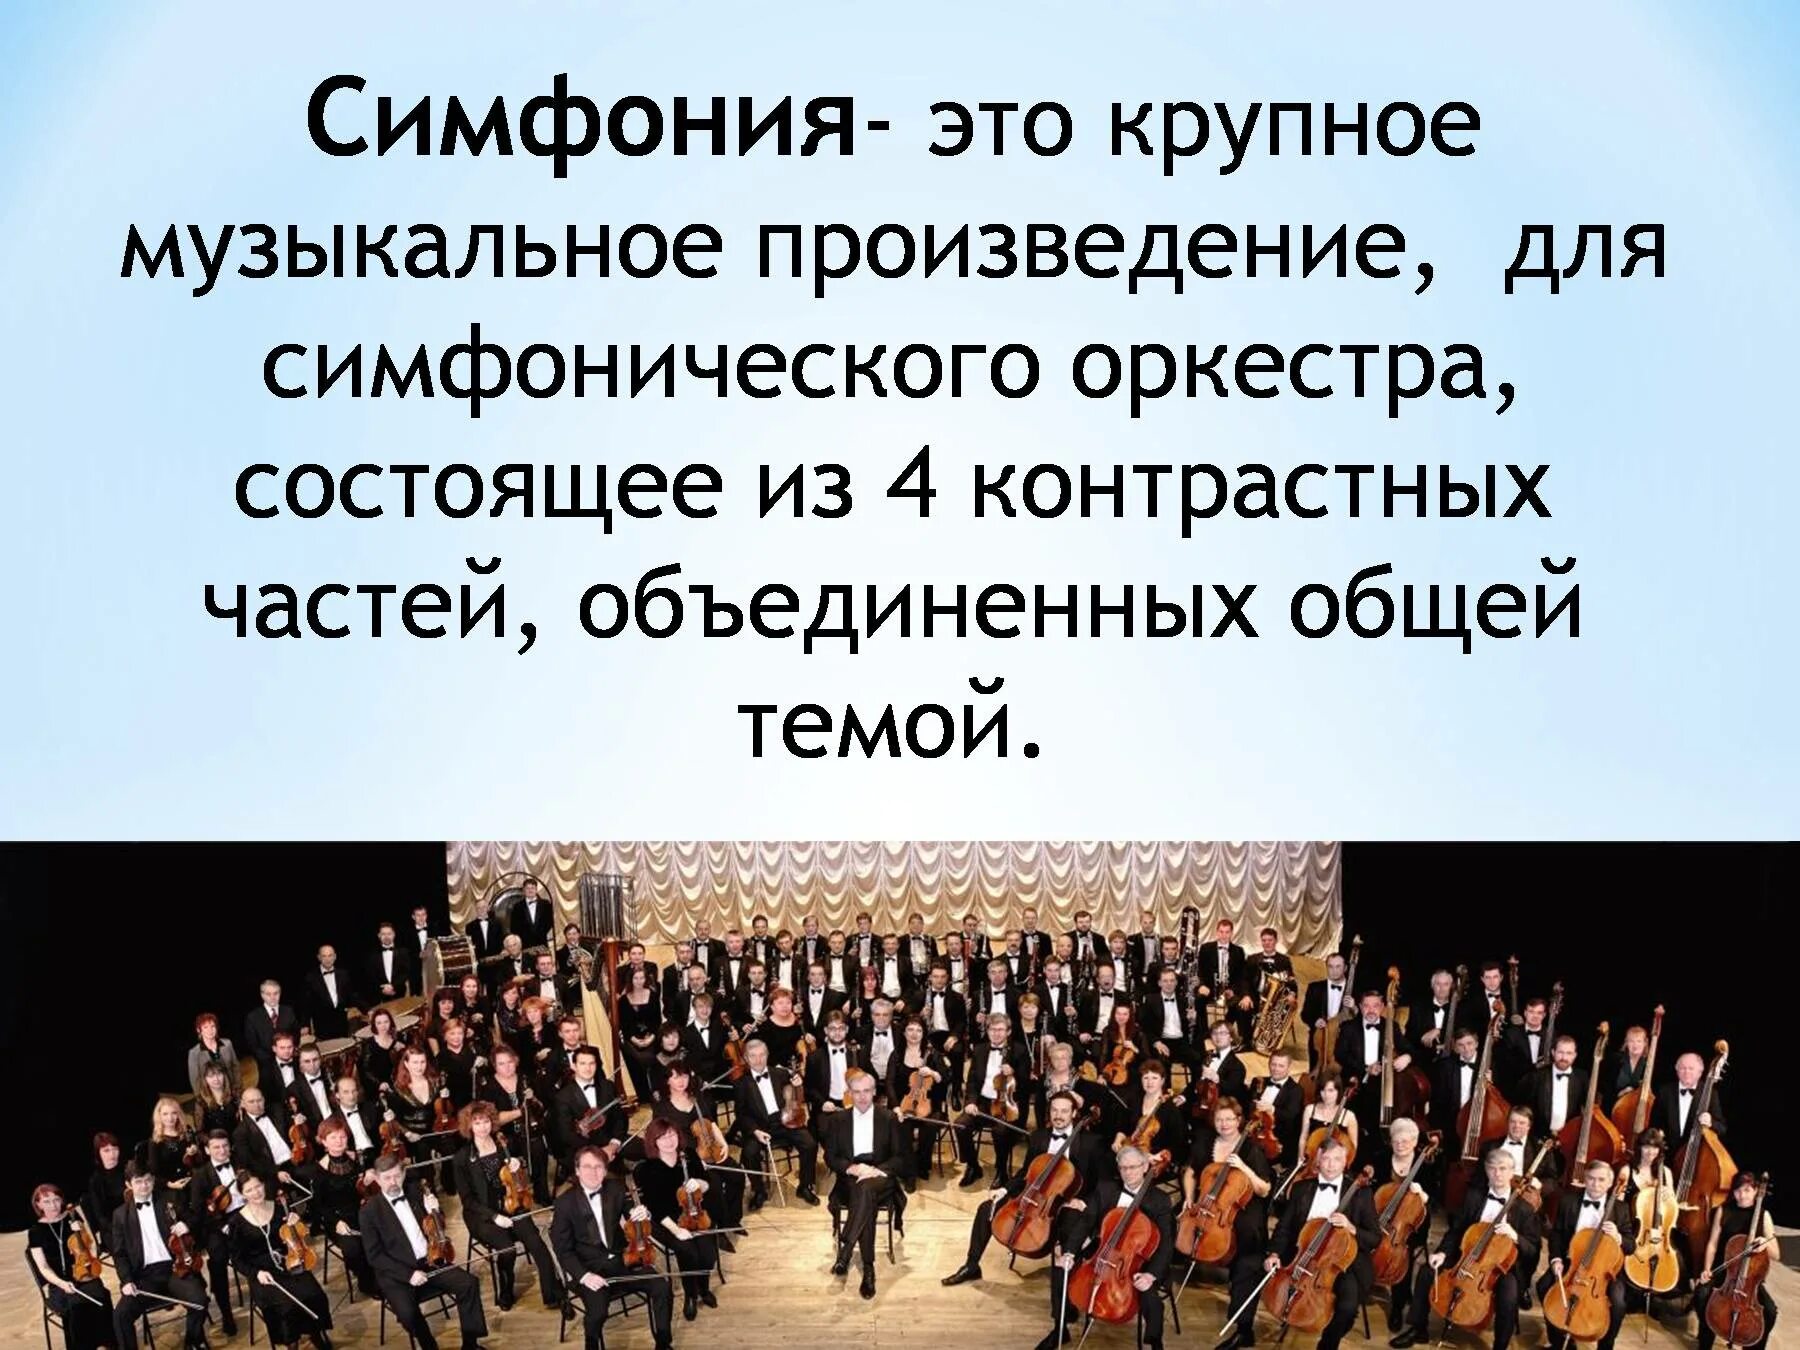 Определение музыкальных произведений. Симфония. Произведения для симфонического оркестра. Симфония-это музыкальное произведение. Музыкальное произведение для симфонического оркестра.